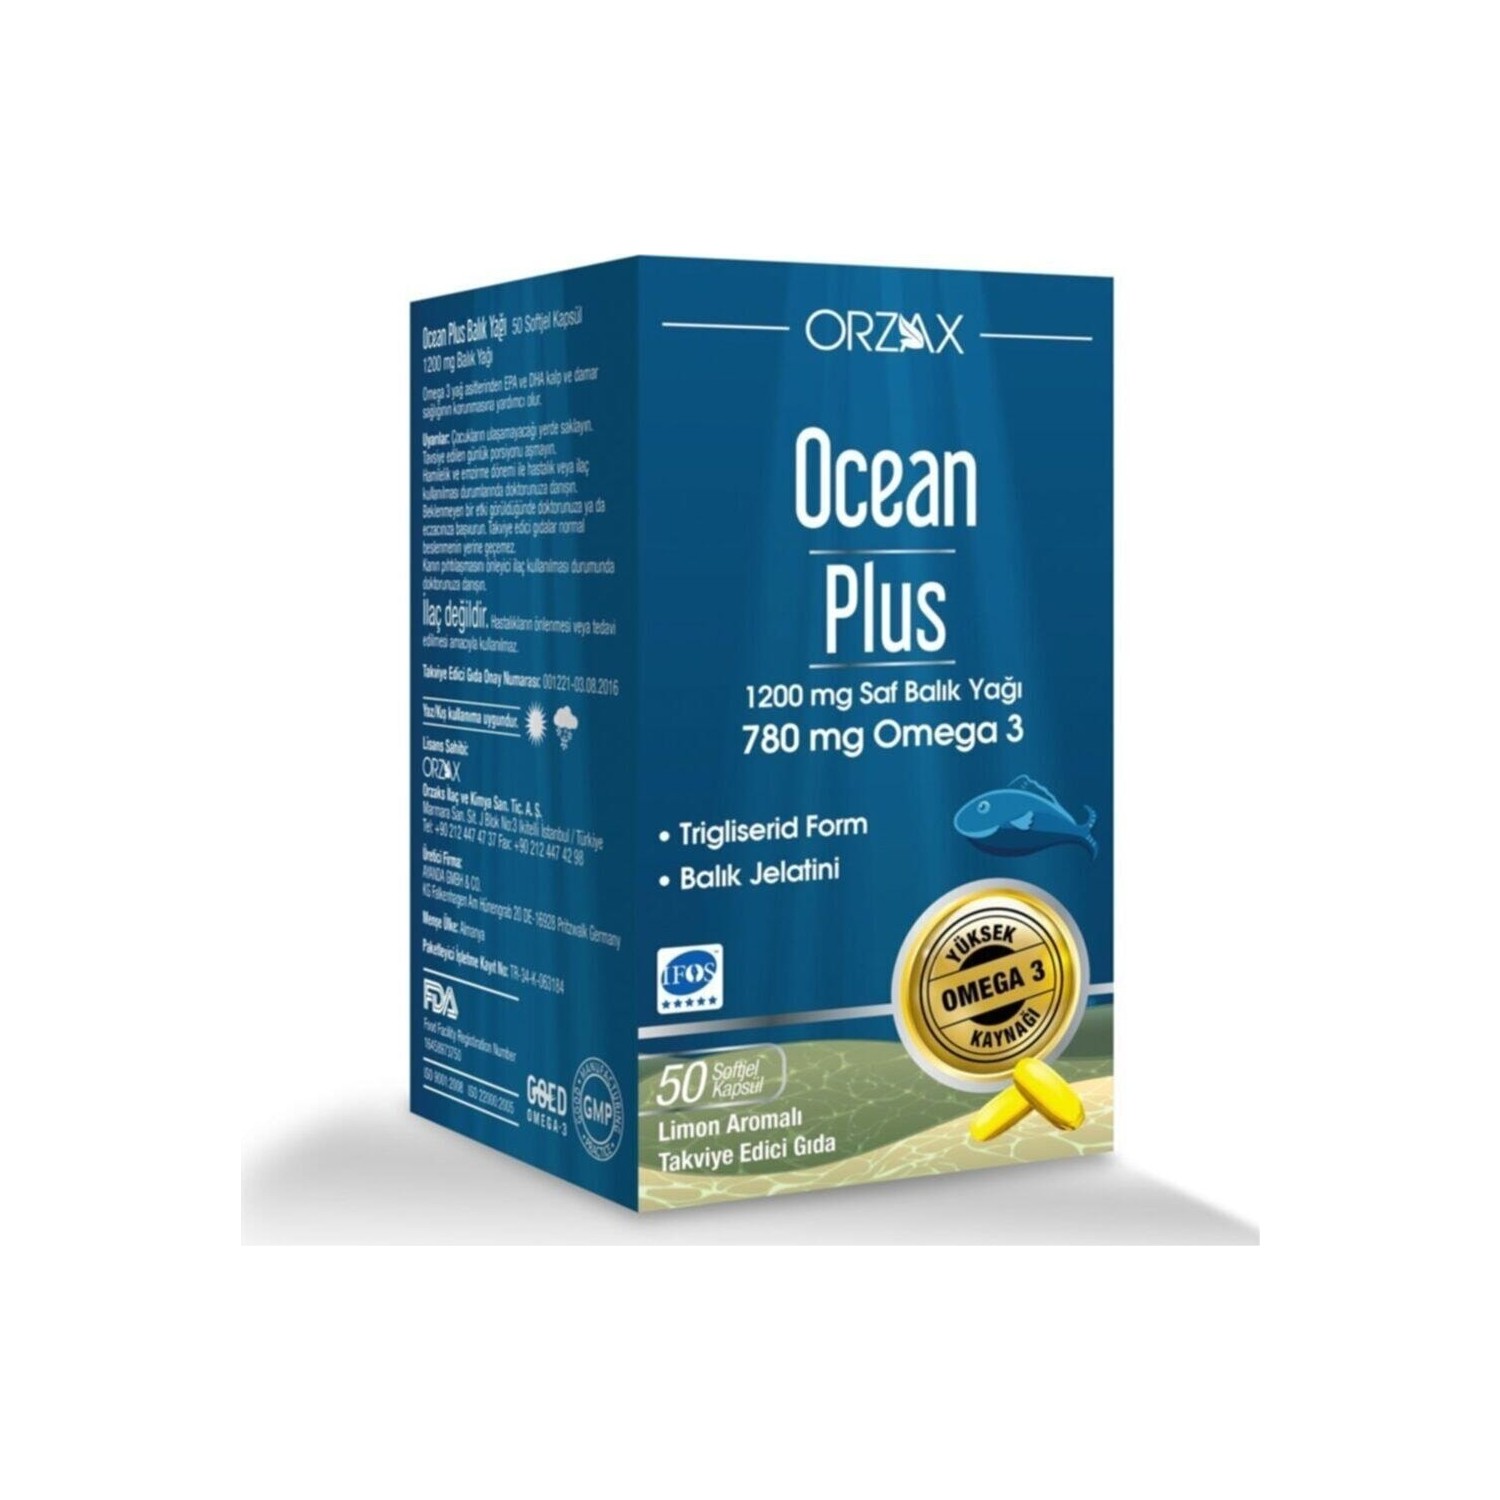 Омега-3 Plus Orzax 1200 мг, 50 капсул омега 3 ocean plus 1200 мг 2 упаковки по 100 капсул